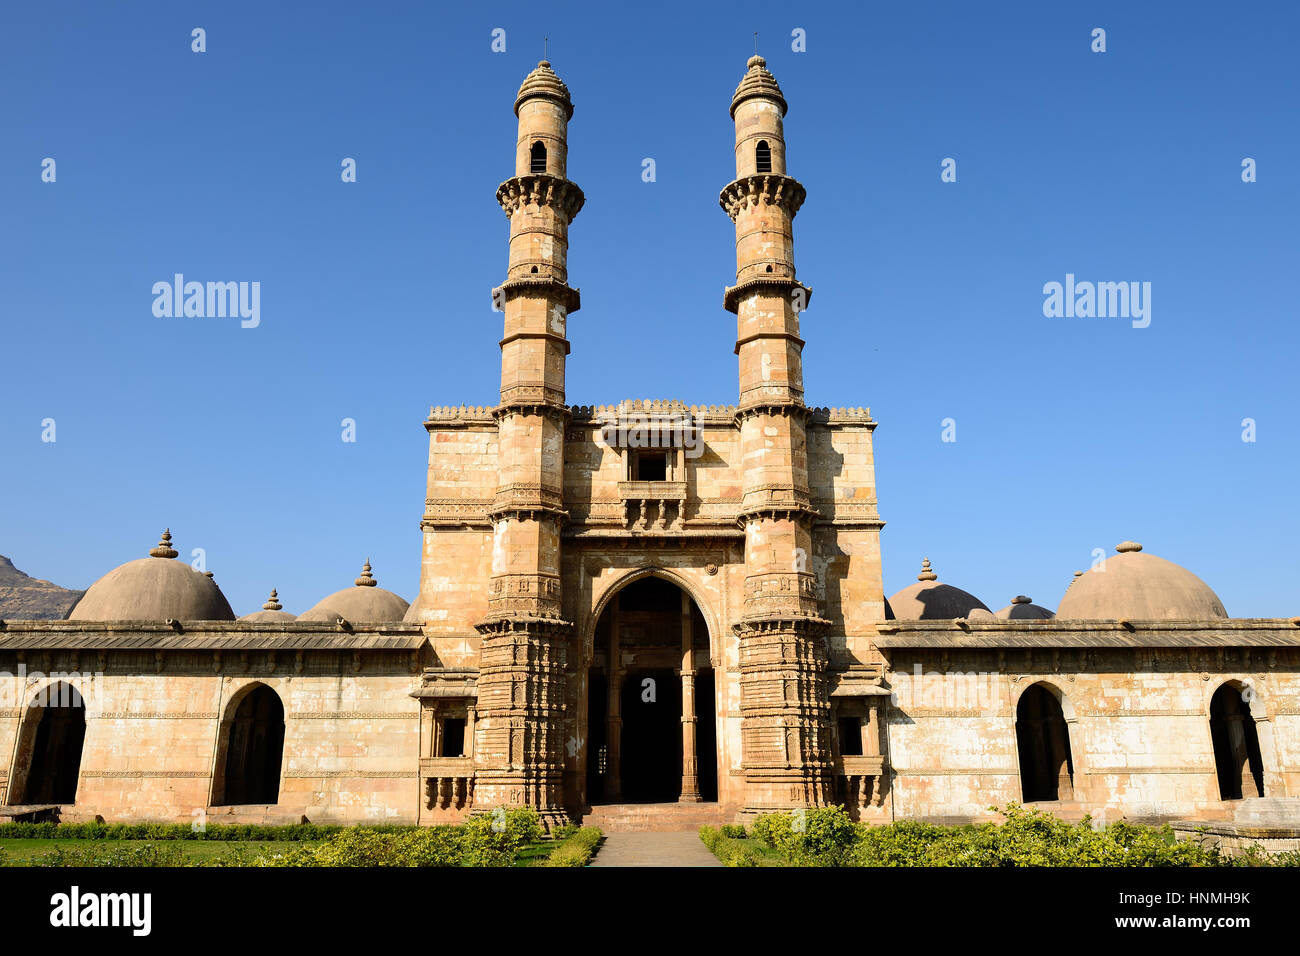 Parc archéologique de Champaner - Pavagadh est une ville historique dans l'état du Gujarat. La mosquée Jami Masjid. (UNESCO) Banque D'Images